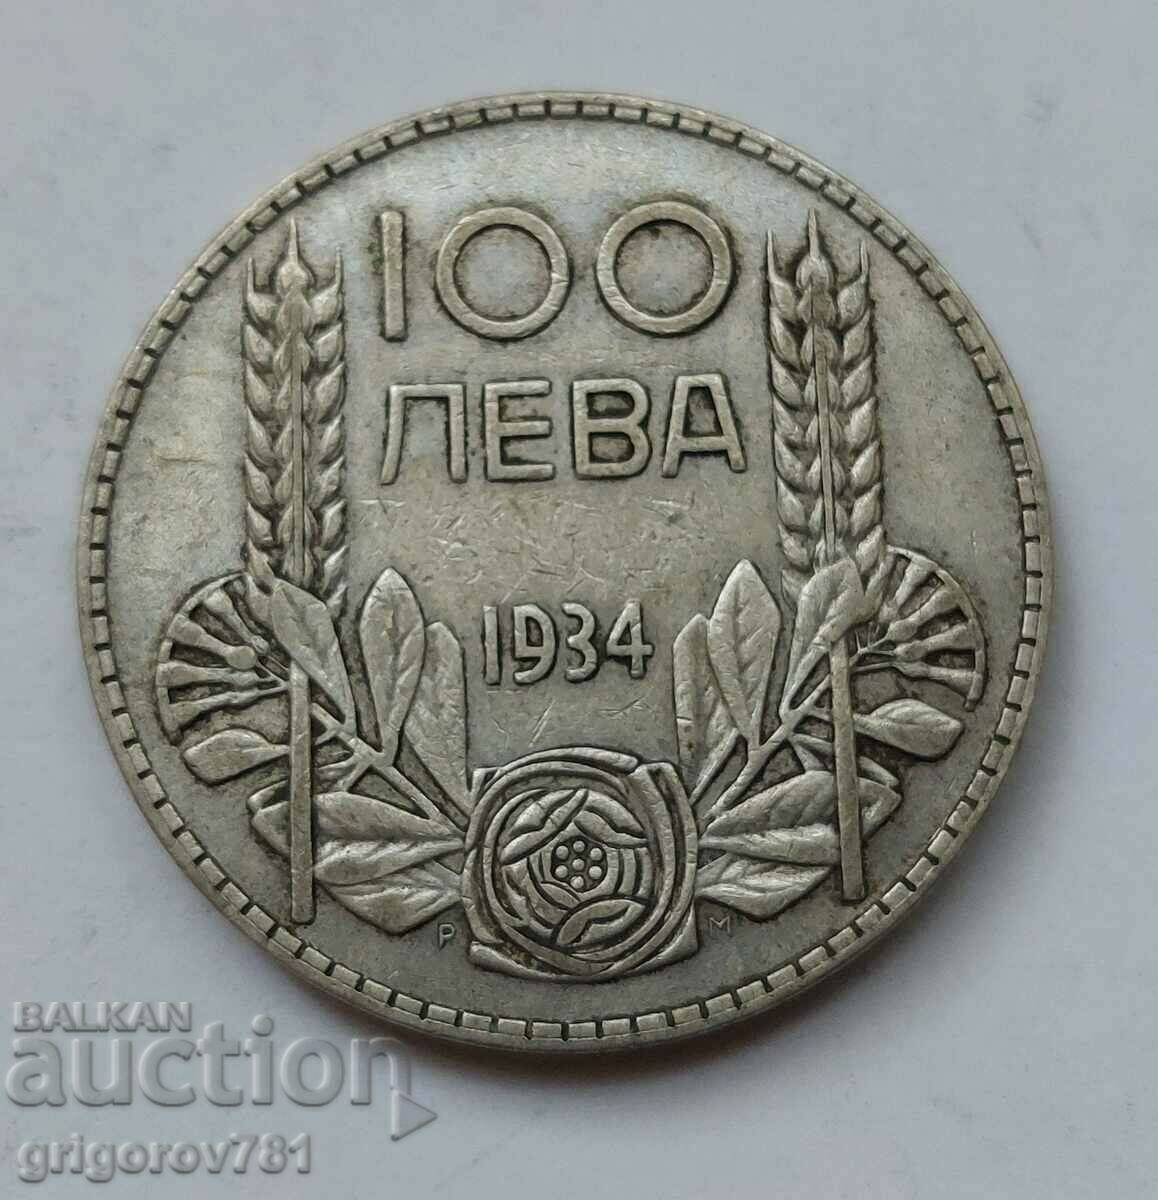 Ασήμι 100 λέβα Βουλγαρία 1934 - ασημένιο νόμισμα #61